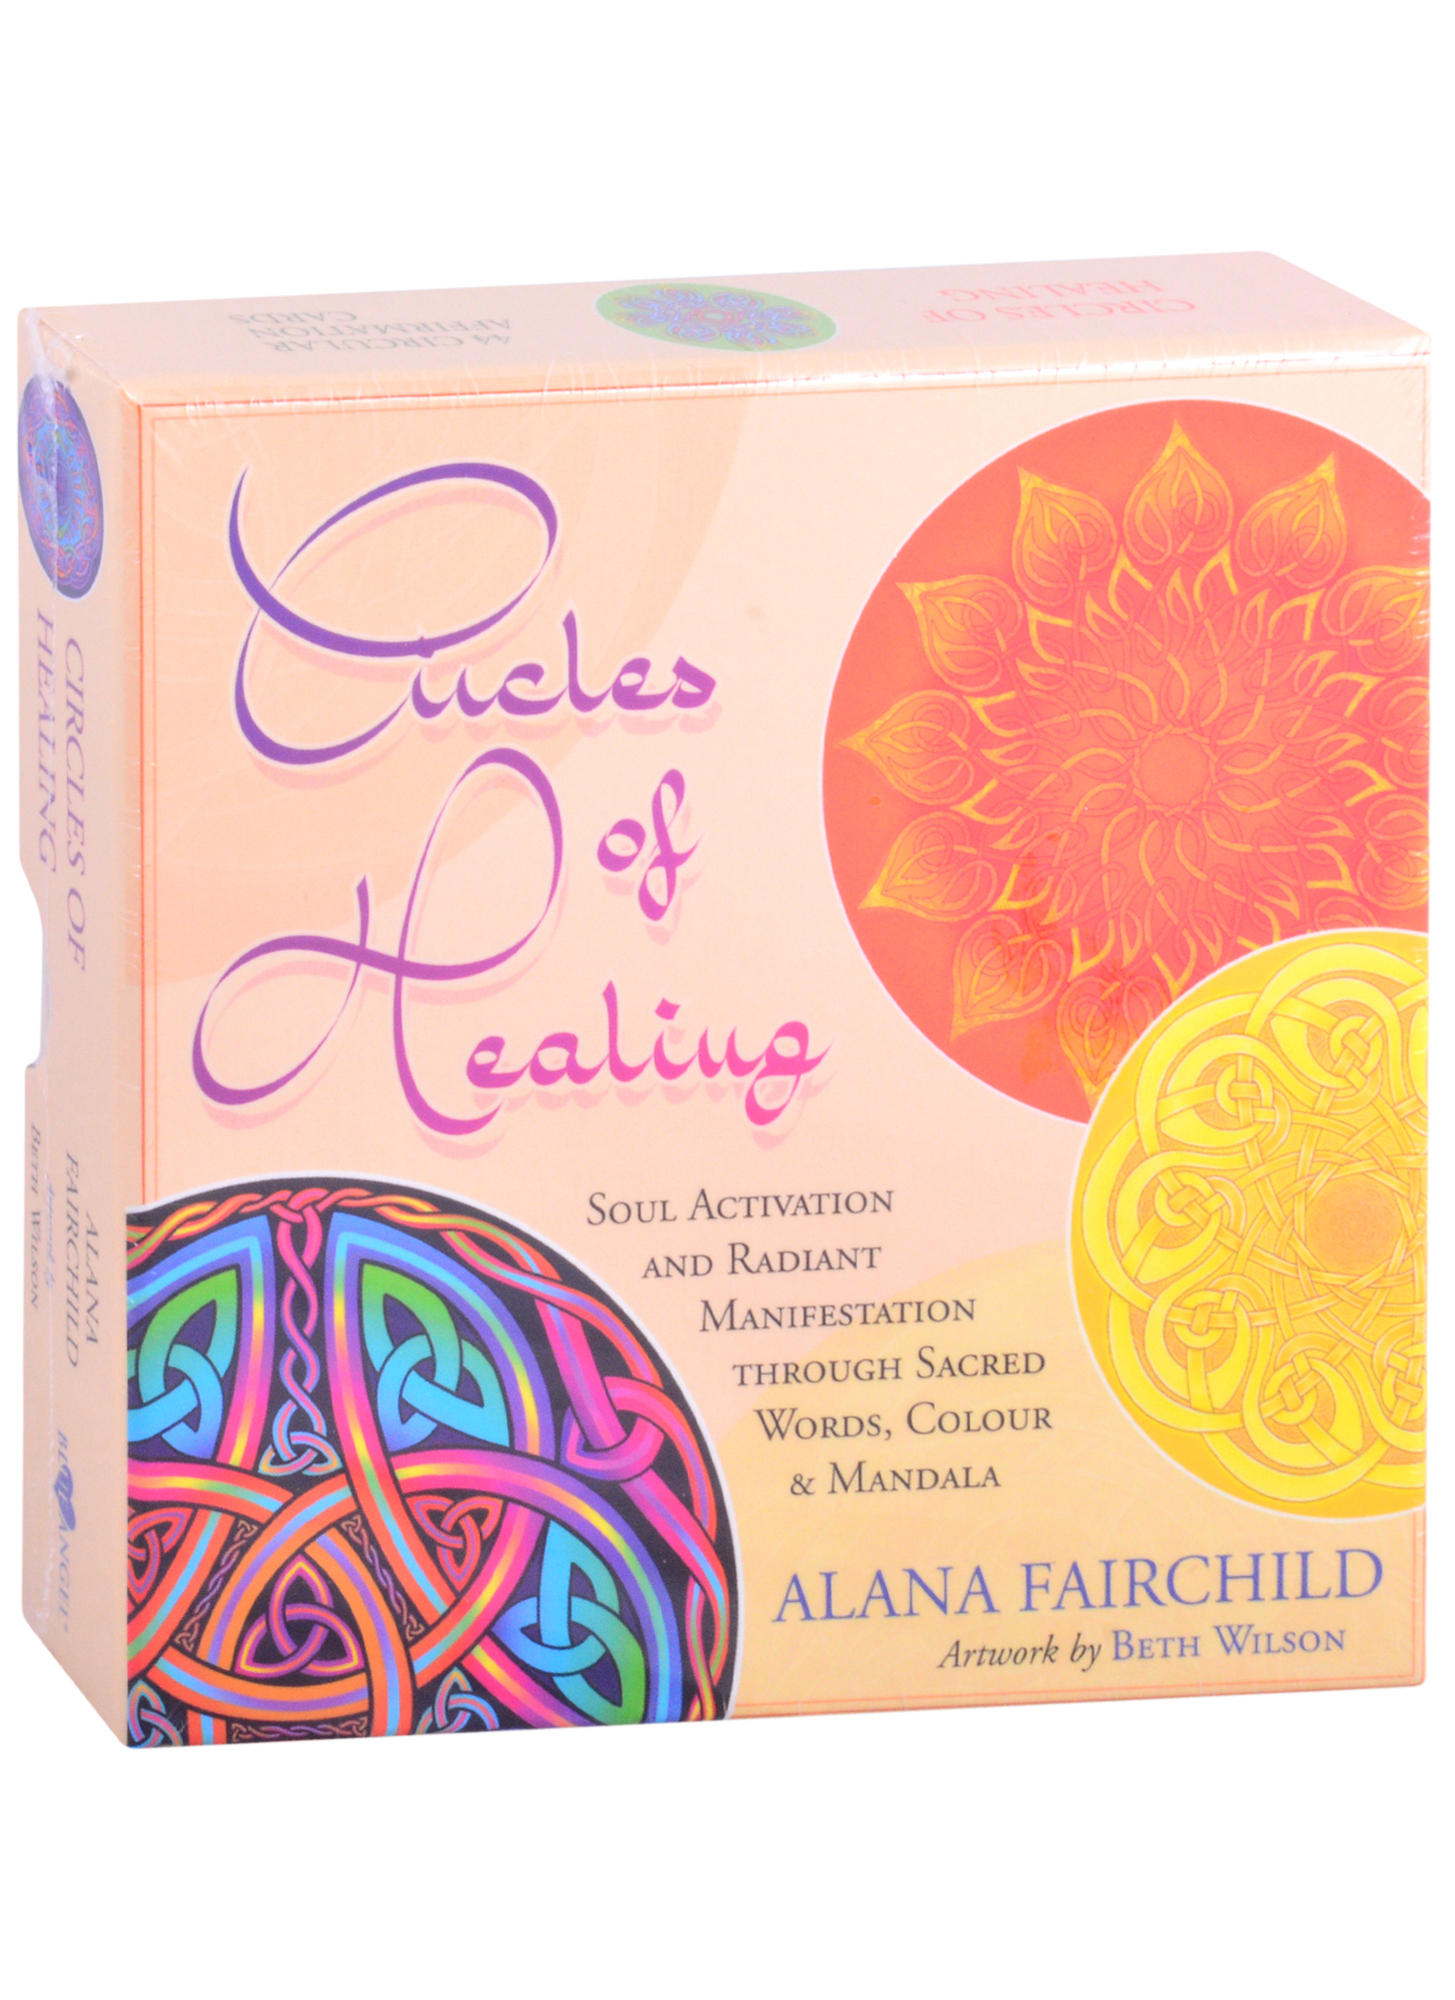 Фэрчайлд Алана Circles of Healing фэрчайлд алана таро kuan yin oracle 44 карты и книга